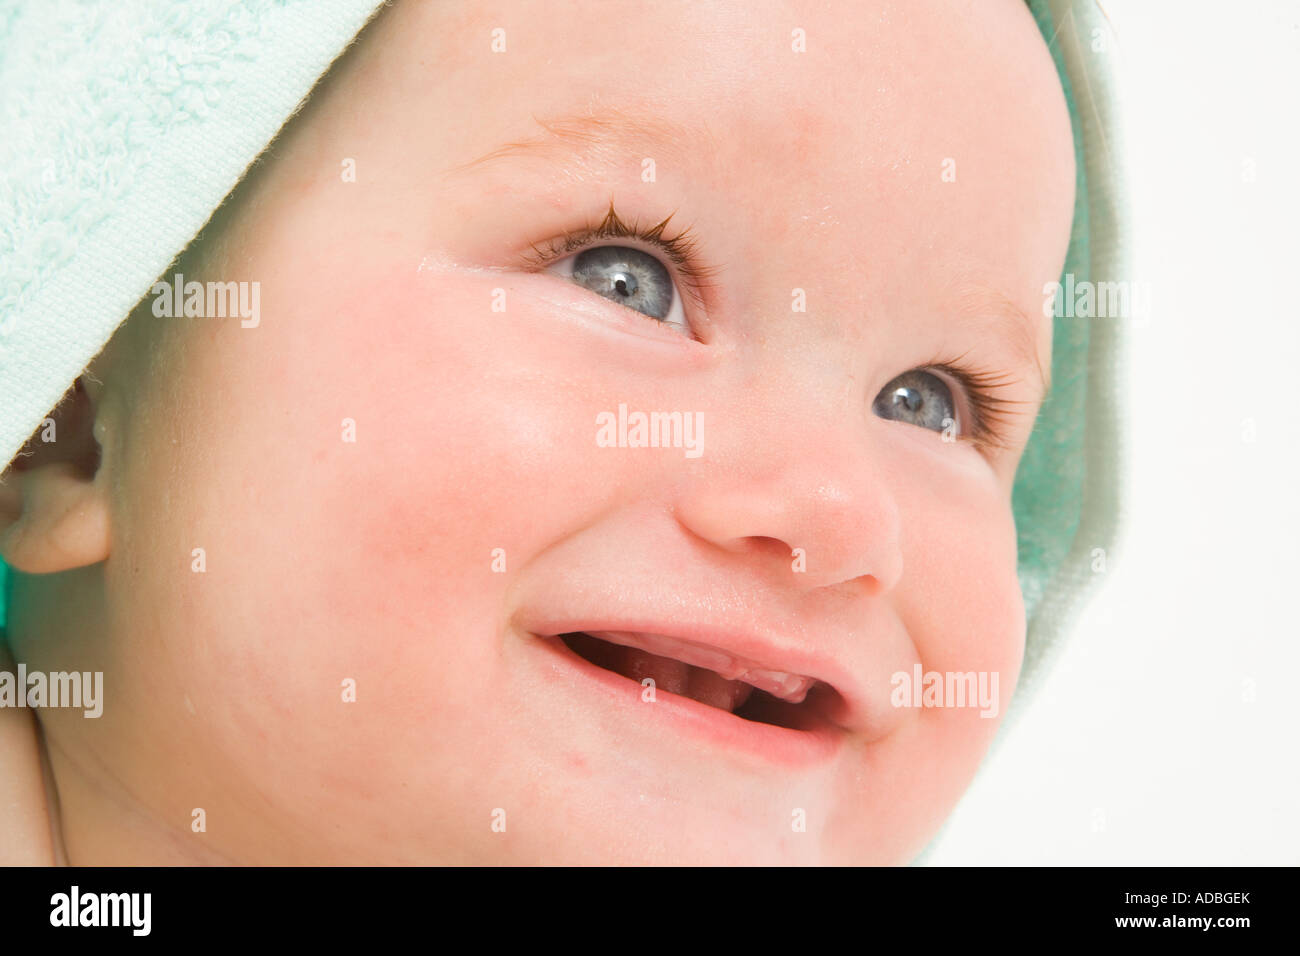 Baby mit blauen Handtuch über den Kopf Stockfoto